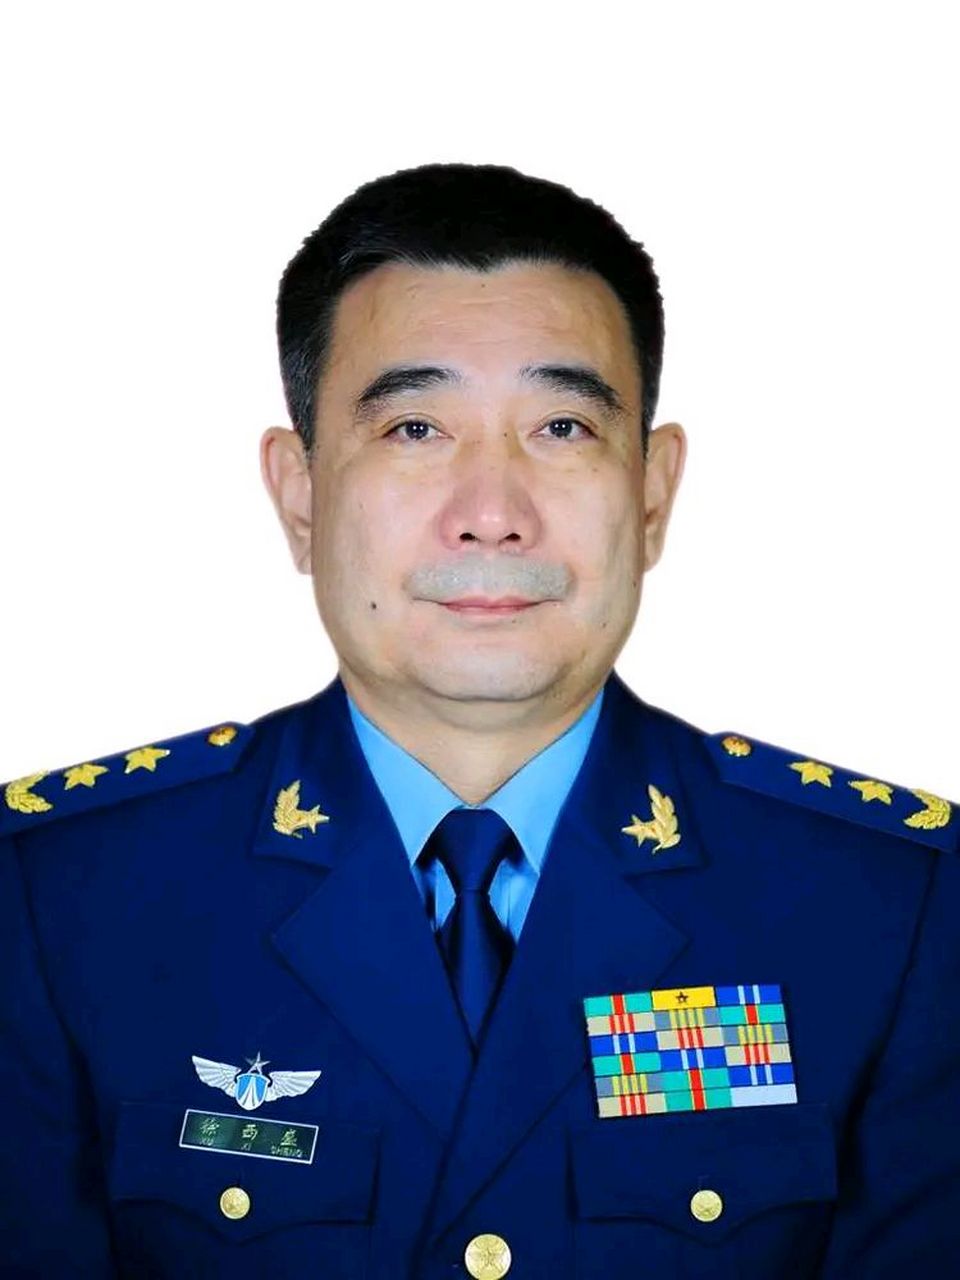 据央视网消息,王厚斌,徐西盛分别就任火箭军司令员和政治委员,并晋升